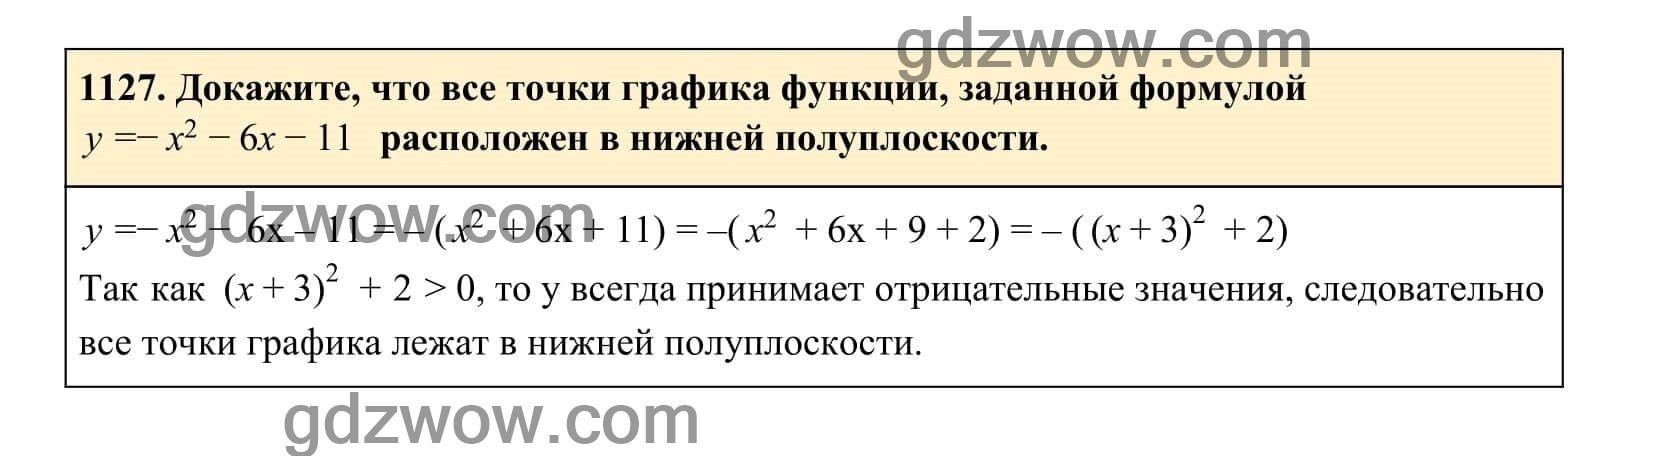 Упражнение 1127 - ГДЗ по Алгебре 7 класс Учебник Макарычев (решебник) - GDZwow